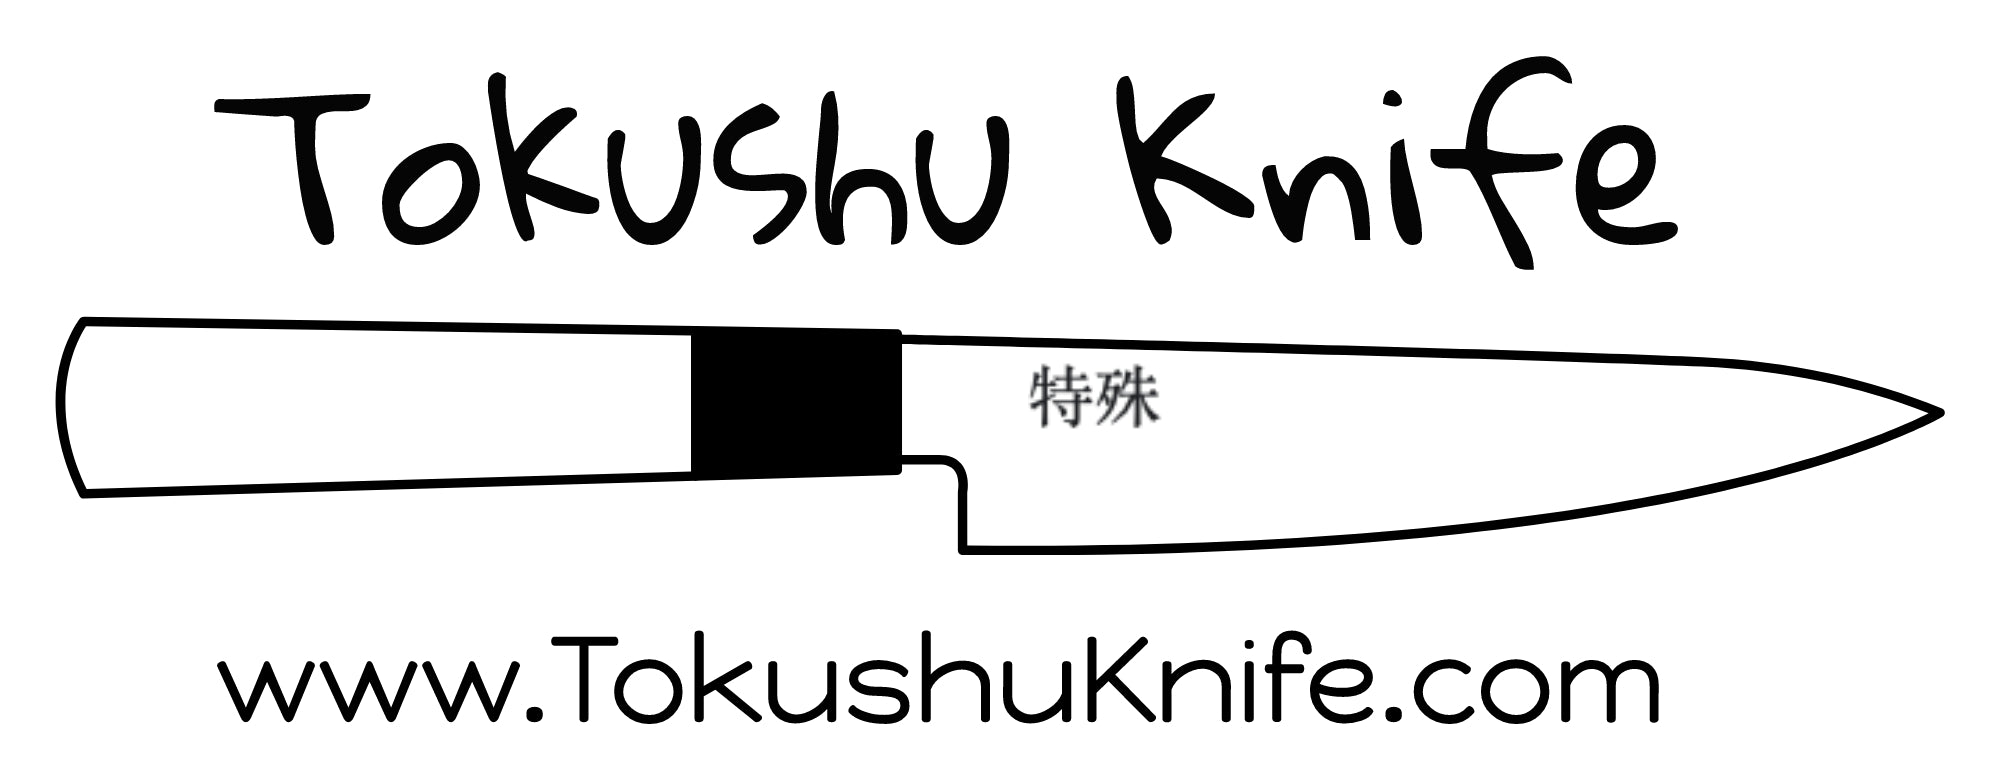 https://tokushuknife.com/cdn/shop/files/LogoMakr-4g0hkE-300dpi.jpg